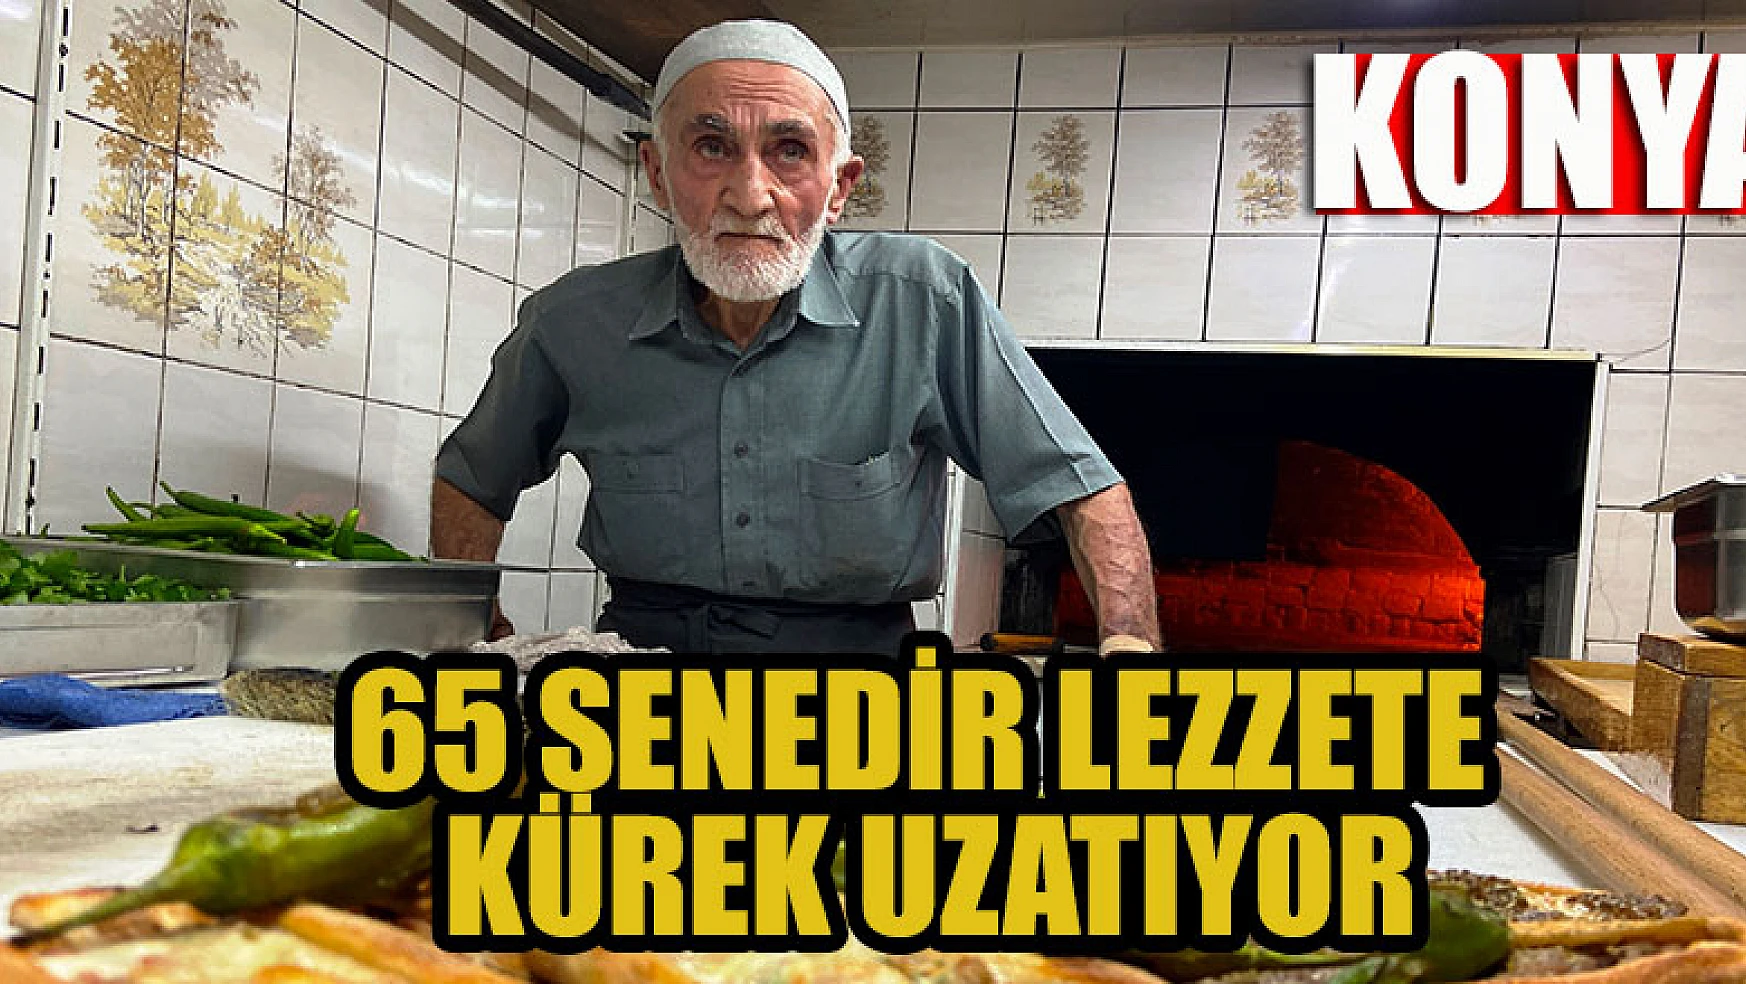 Konya'da 65 senedir lezzete kürek uzatıyor